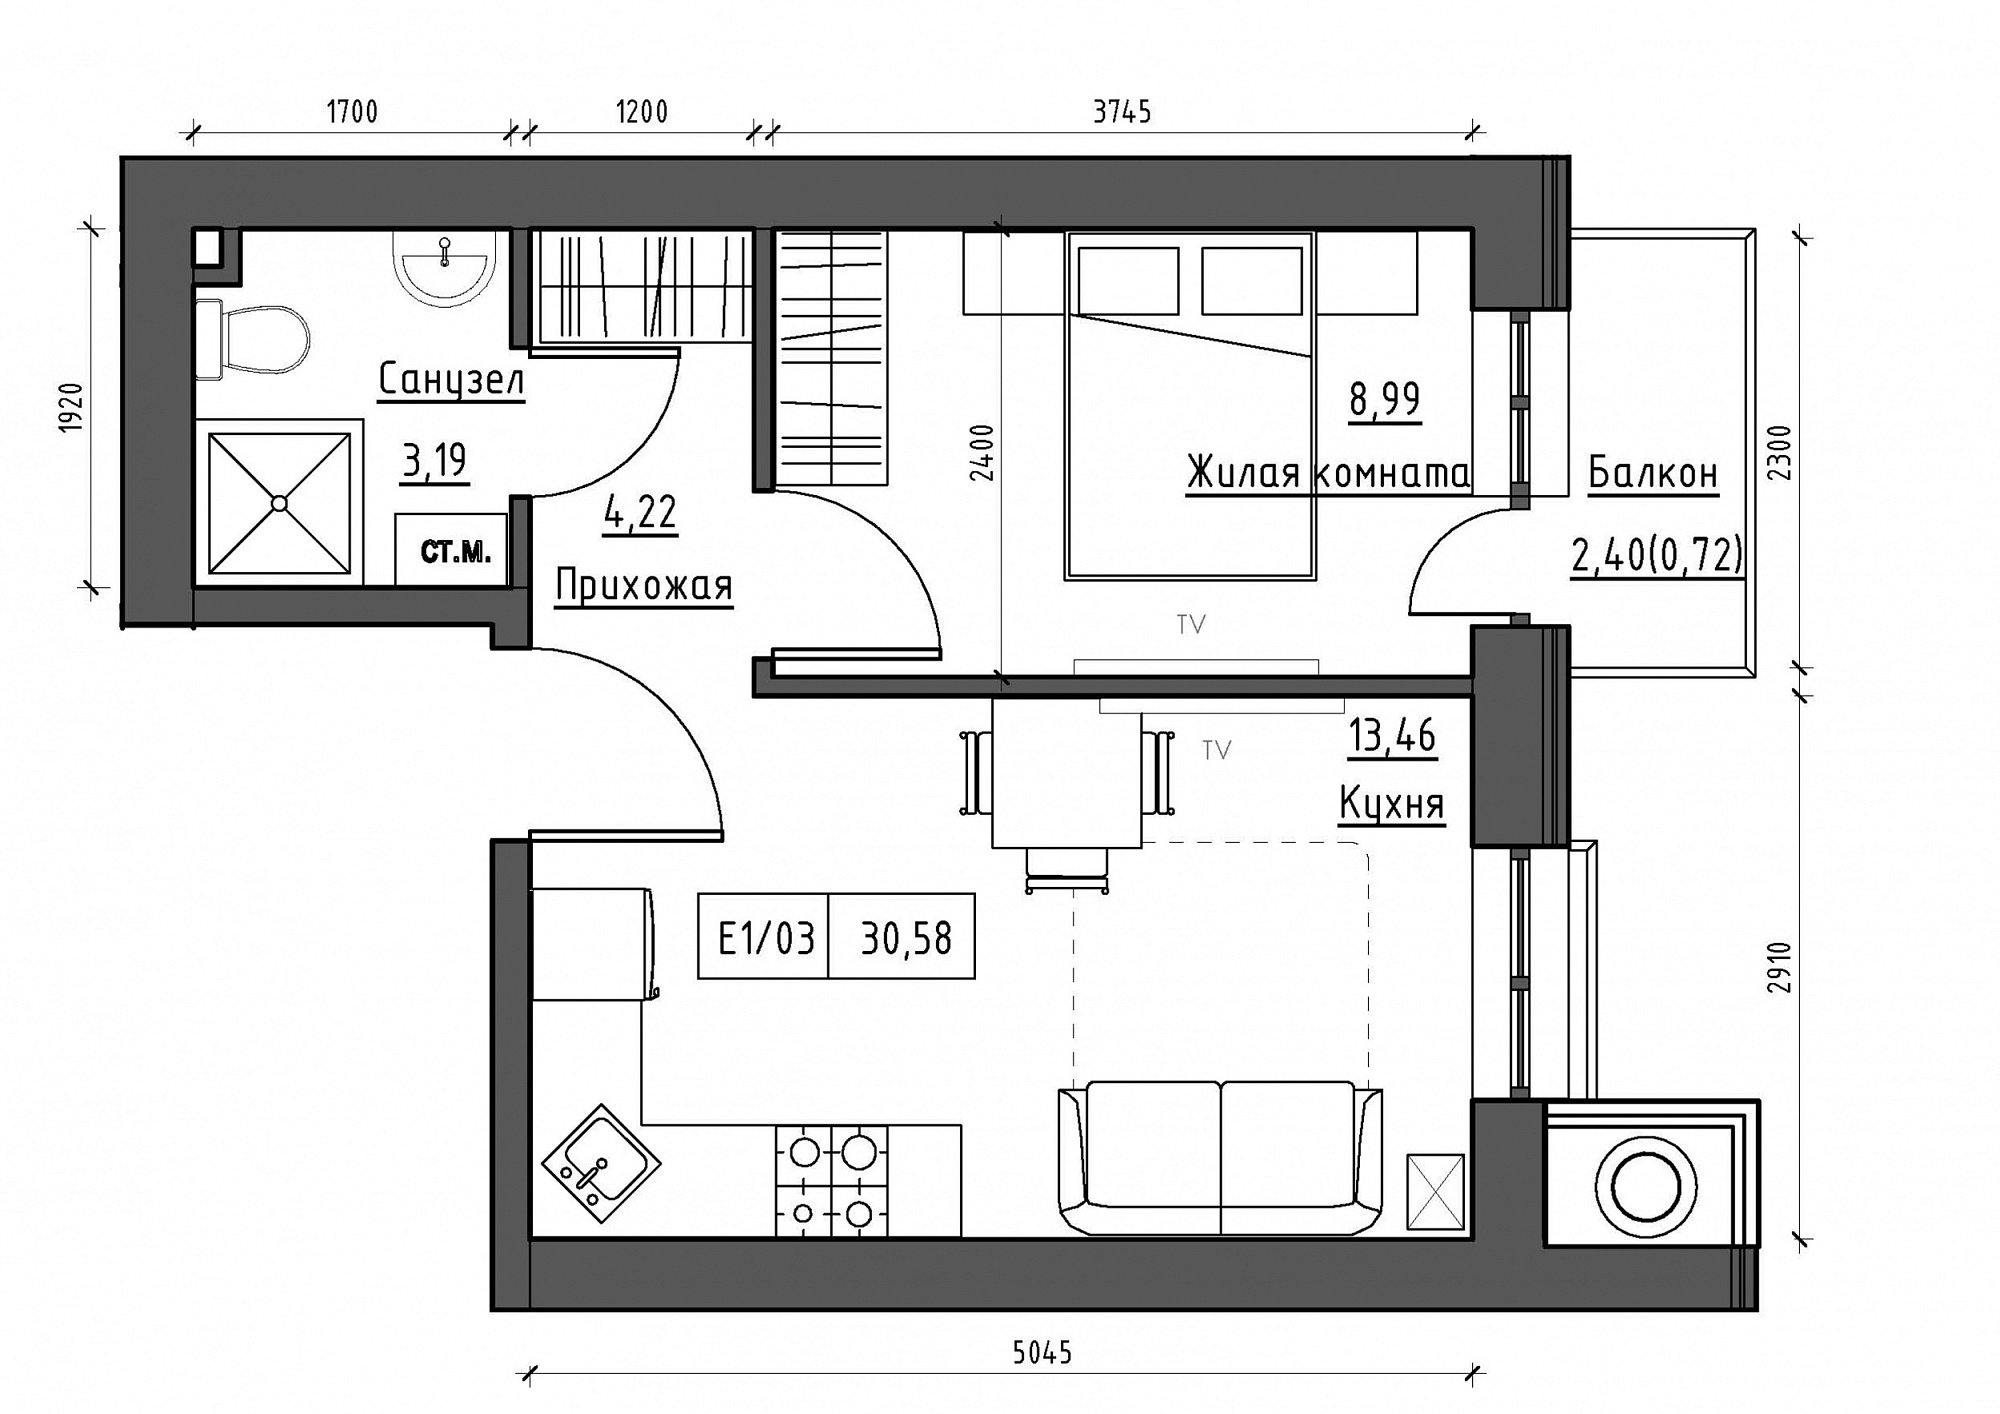 Планировка 1-к квартира площей 30.58м2, KS-012-03/0013.